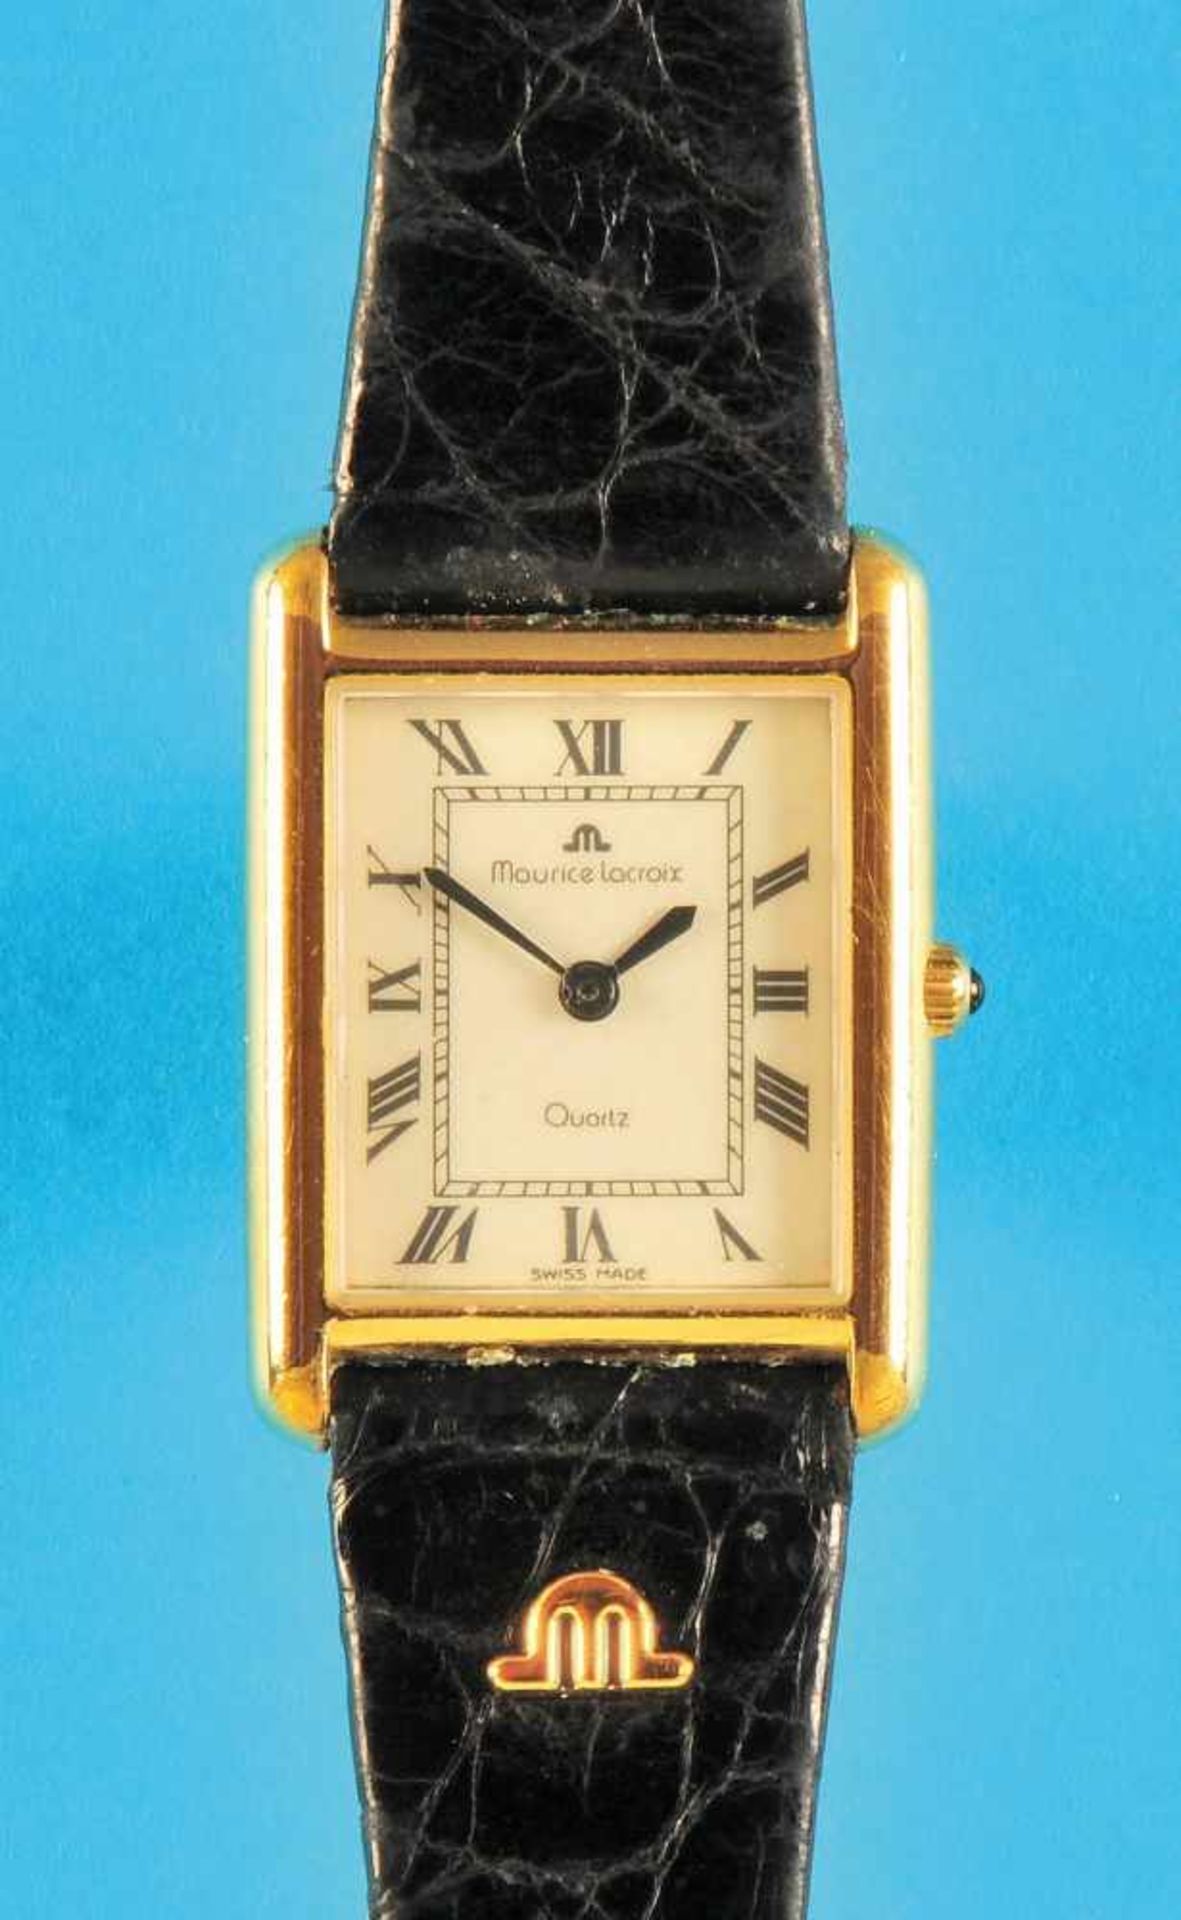 Maurice lacroix quartz, ladies wristwatch